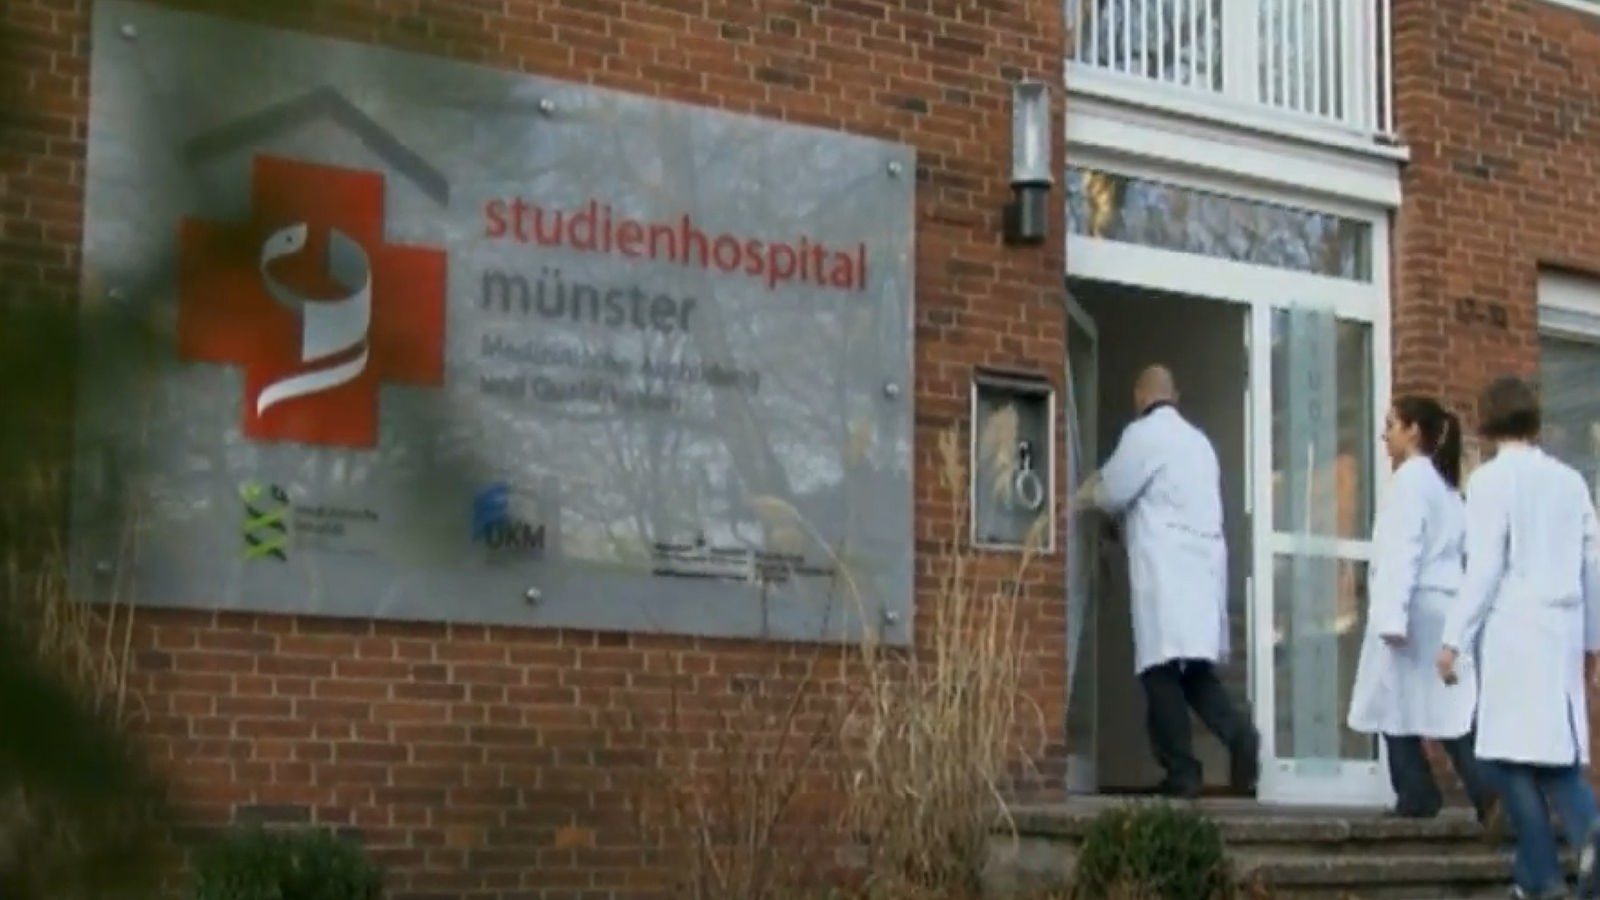 Eingang von dem Studienhospital Münster.